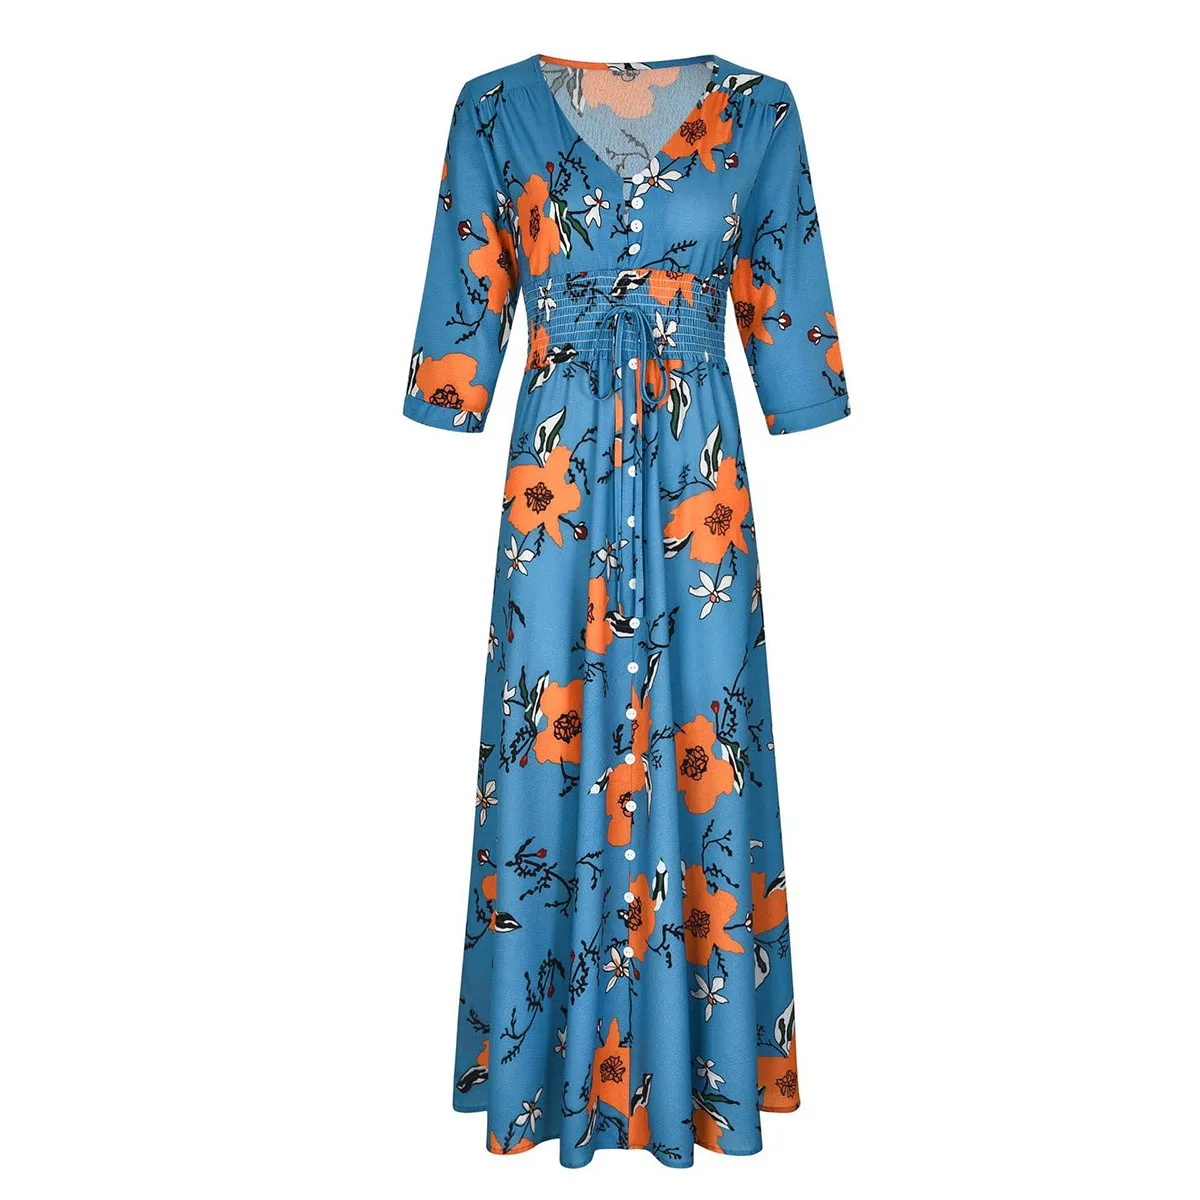 S. FLAVOR, новая женская одежда, рукав три четверти, богемный стиль, бохо, длинные платья, v-образный вырез, цветочный принт, Ретро стиль, тонкие вечерние платья - Цвет: blue